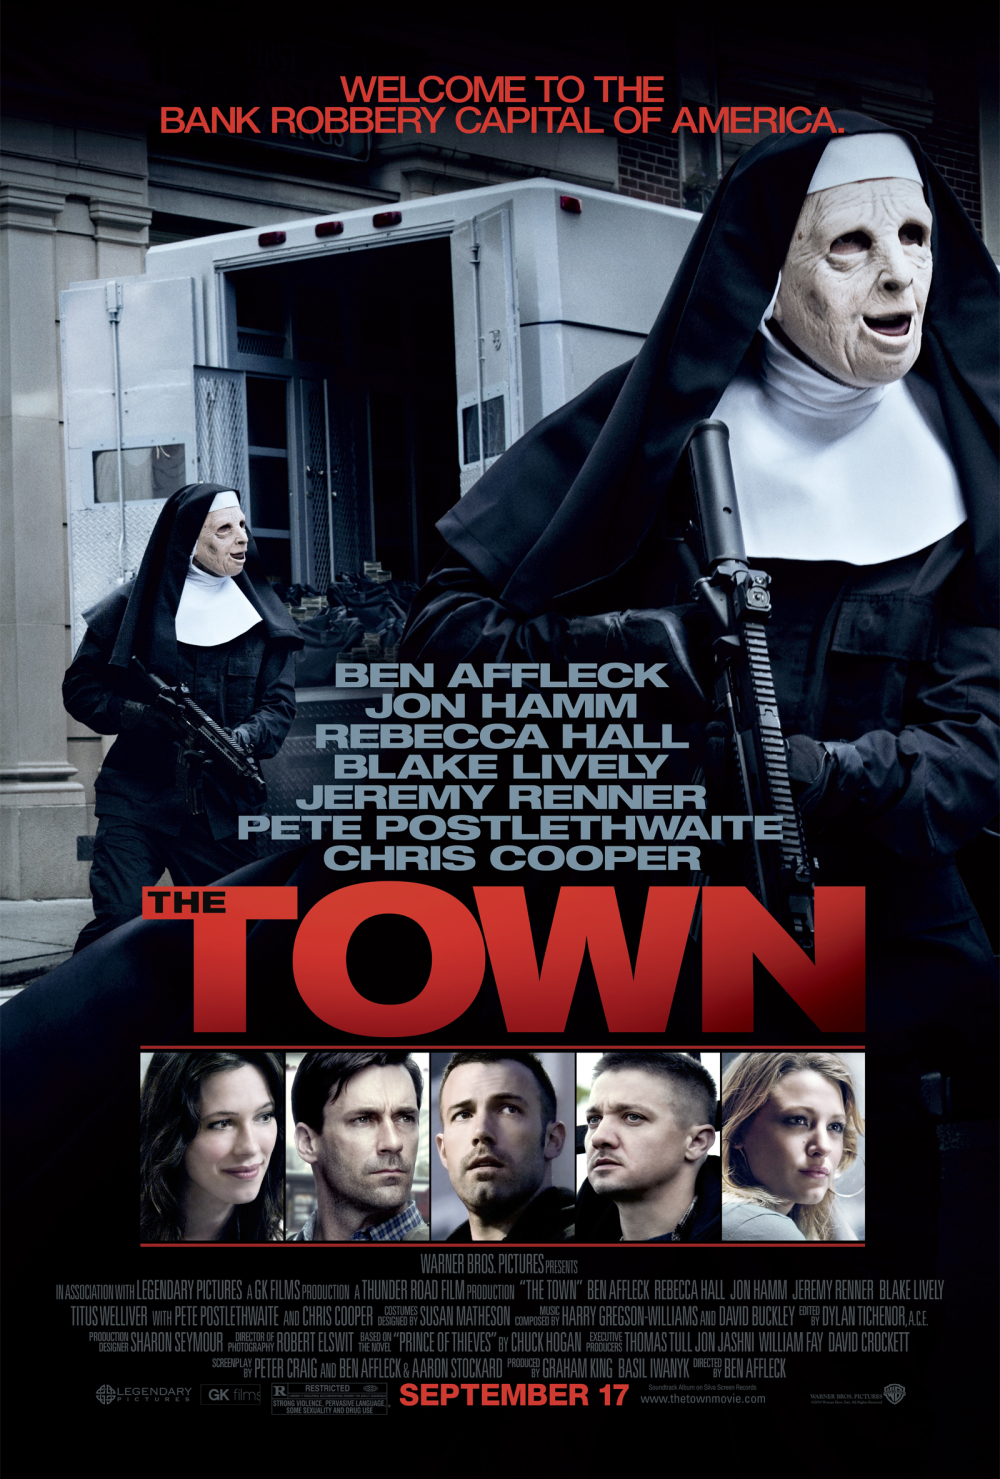 The Town poster: Nonnen met guns!